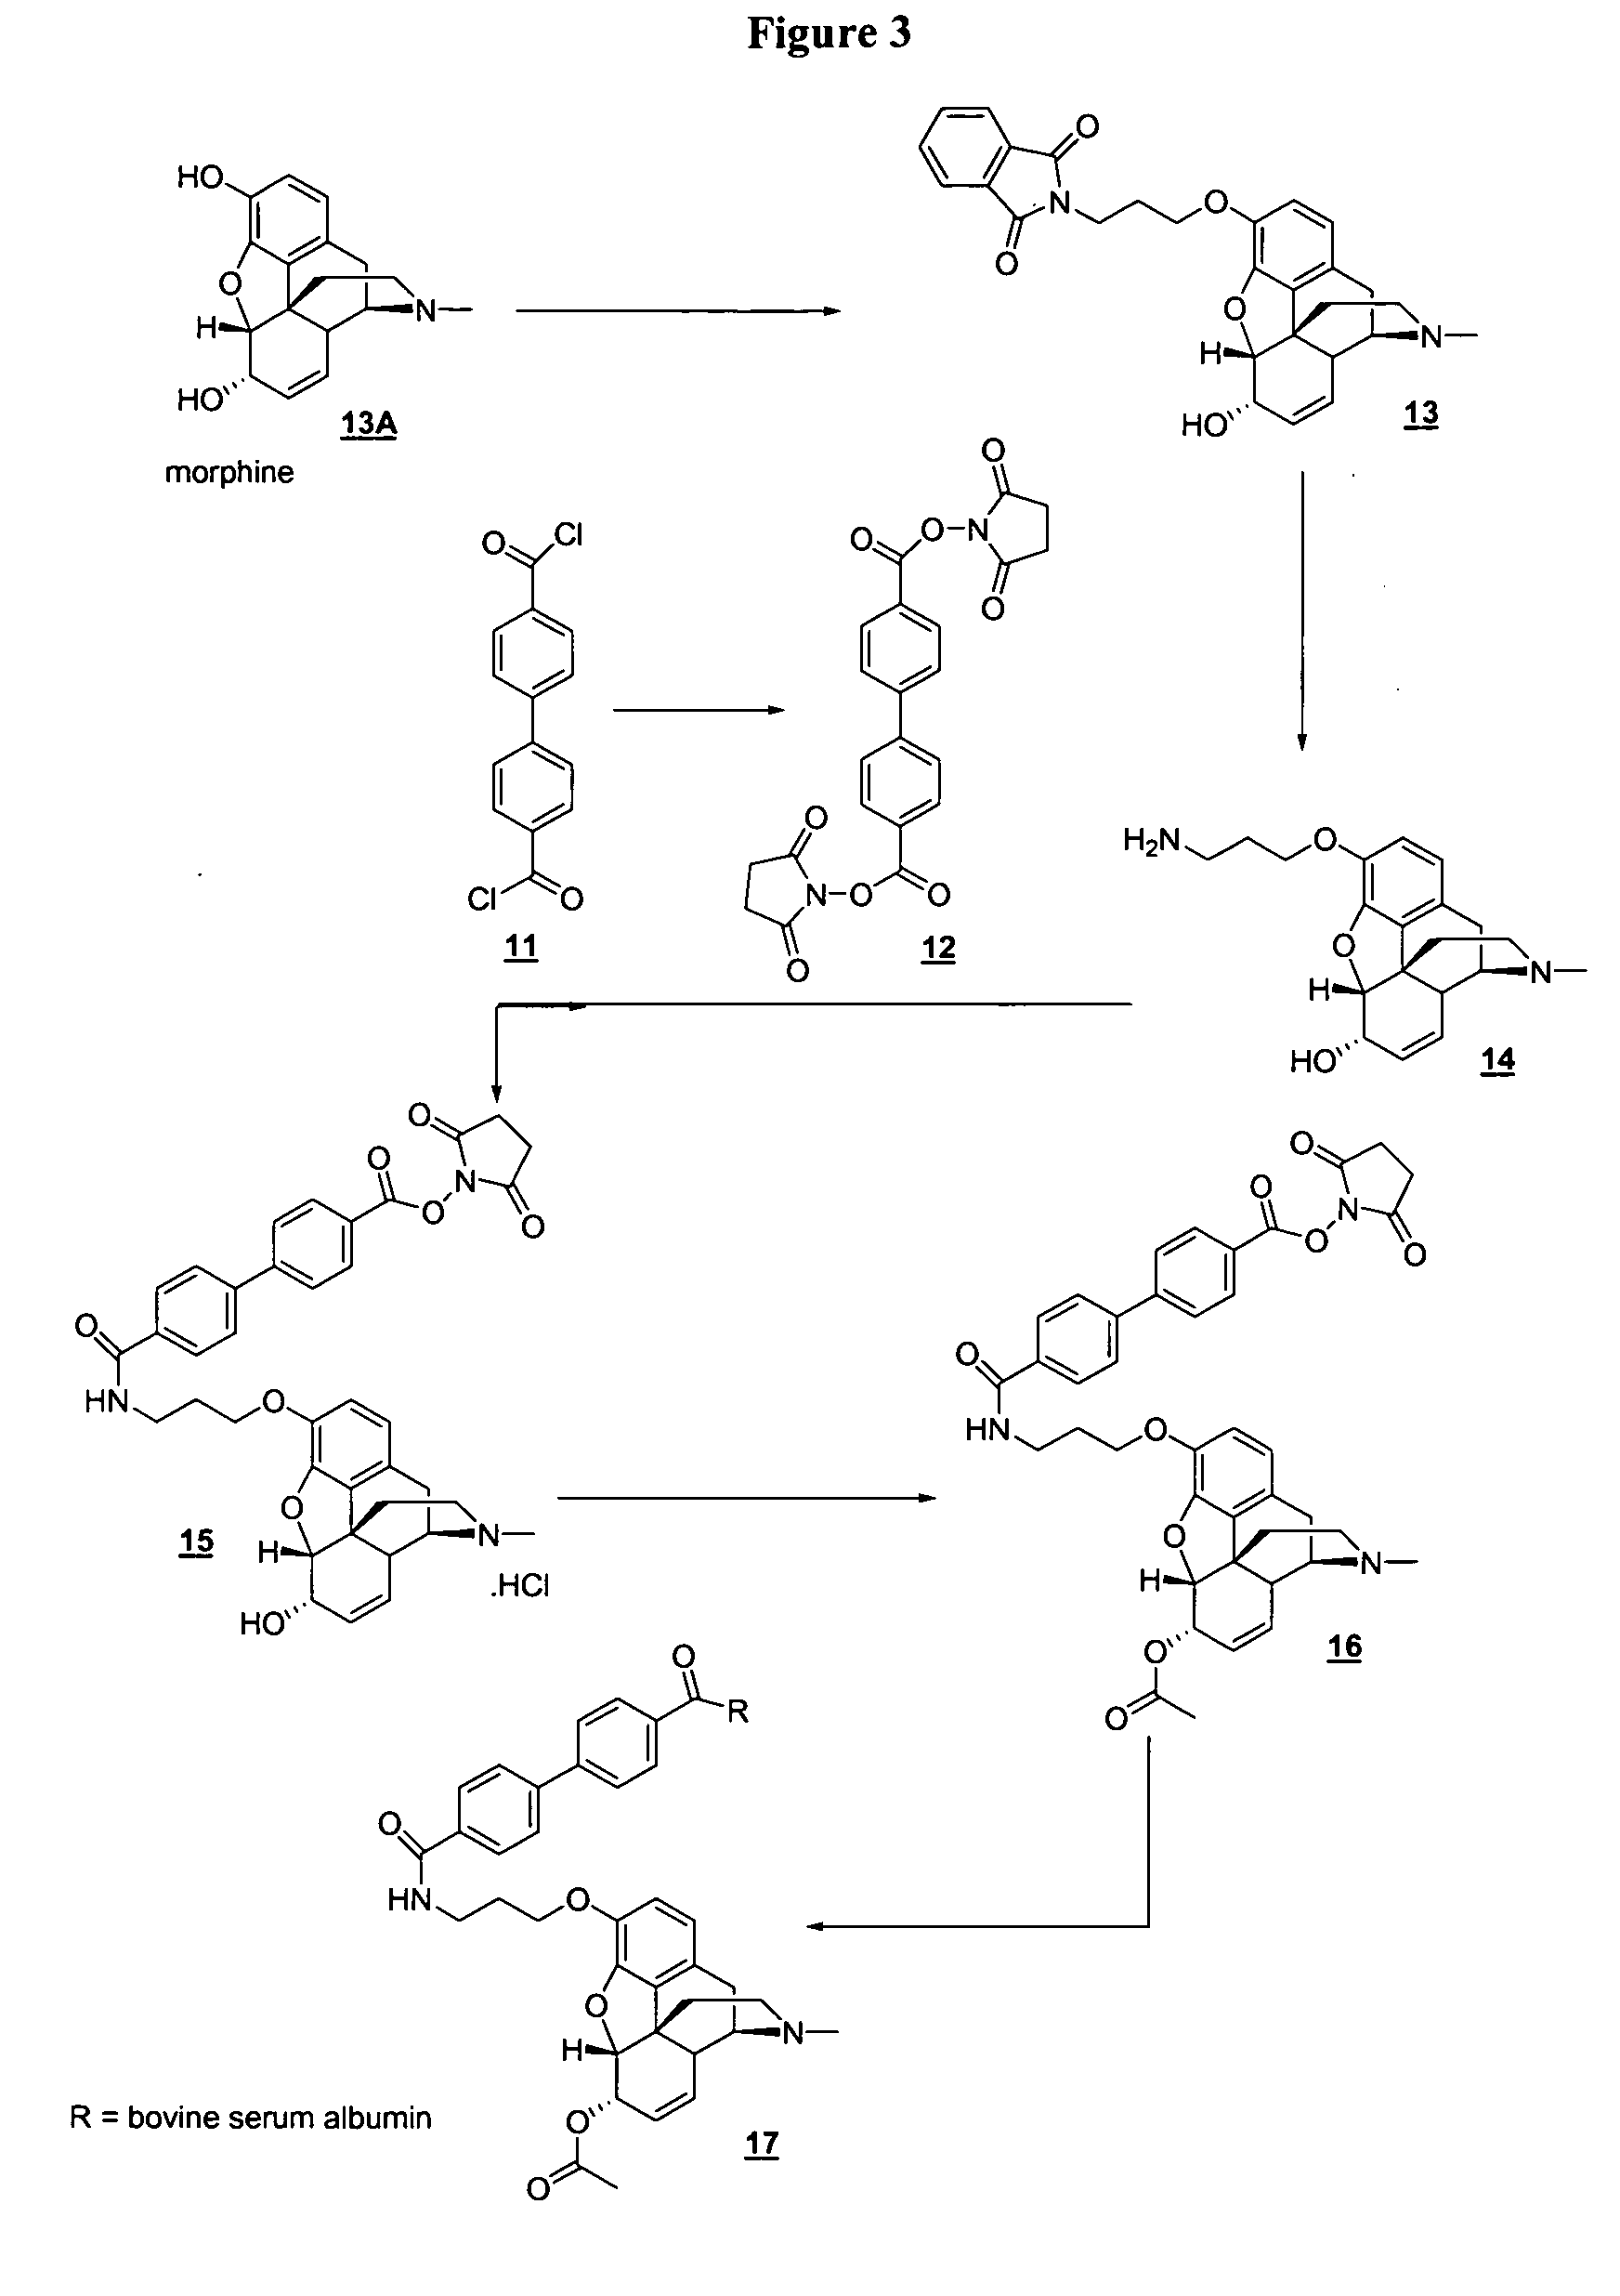 6-Monoacetylmorphine derivatives useful in immunoassay